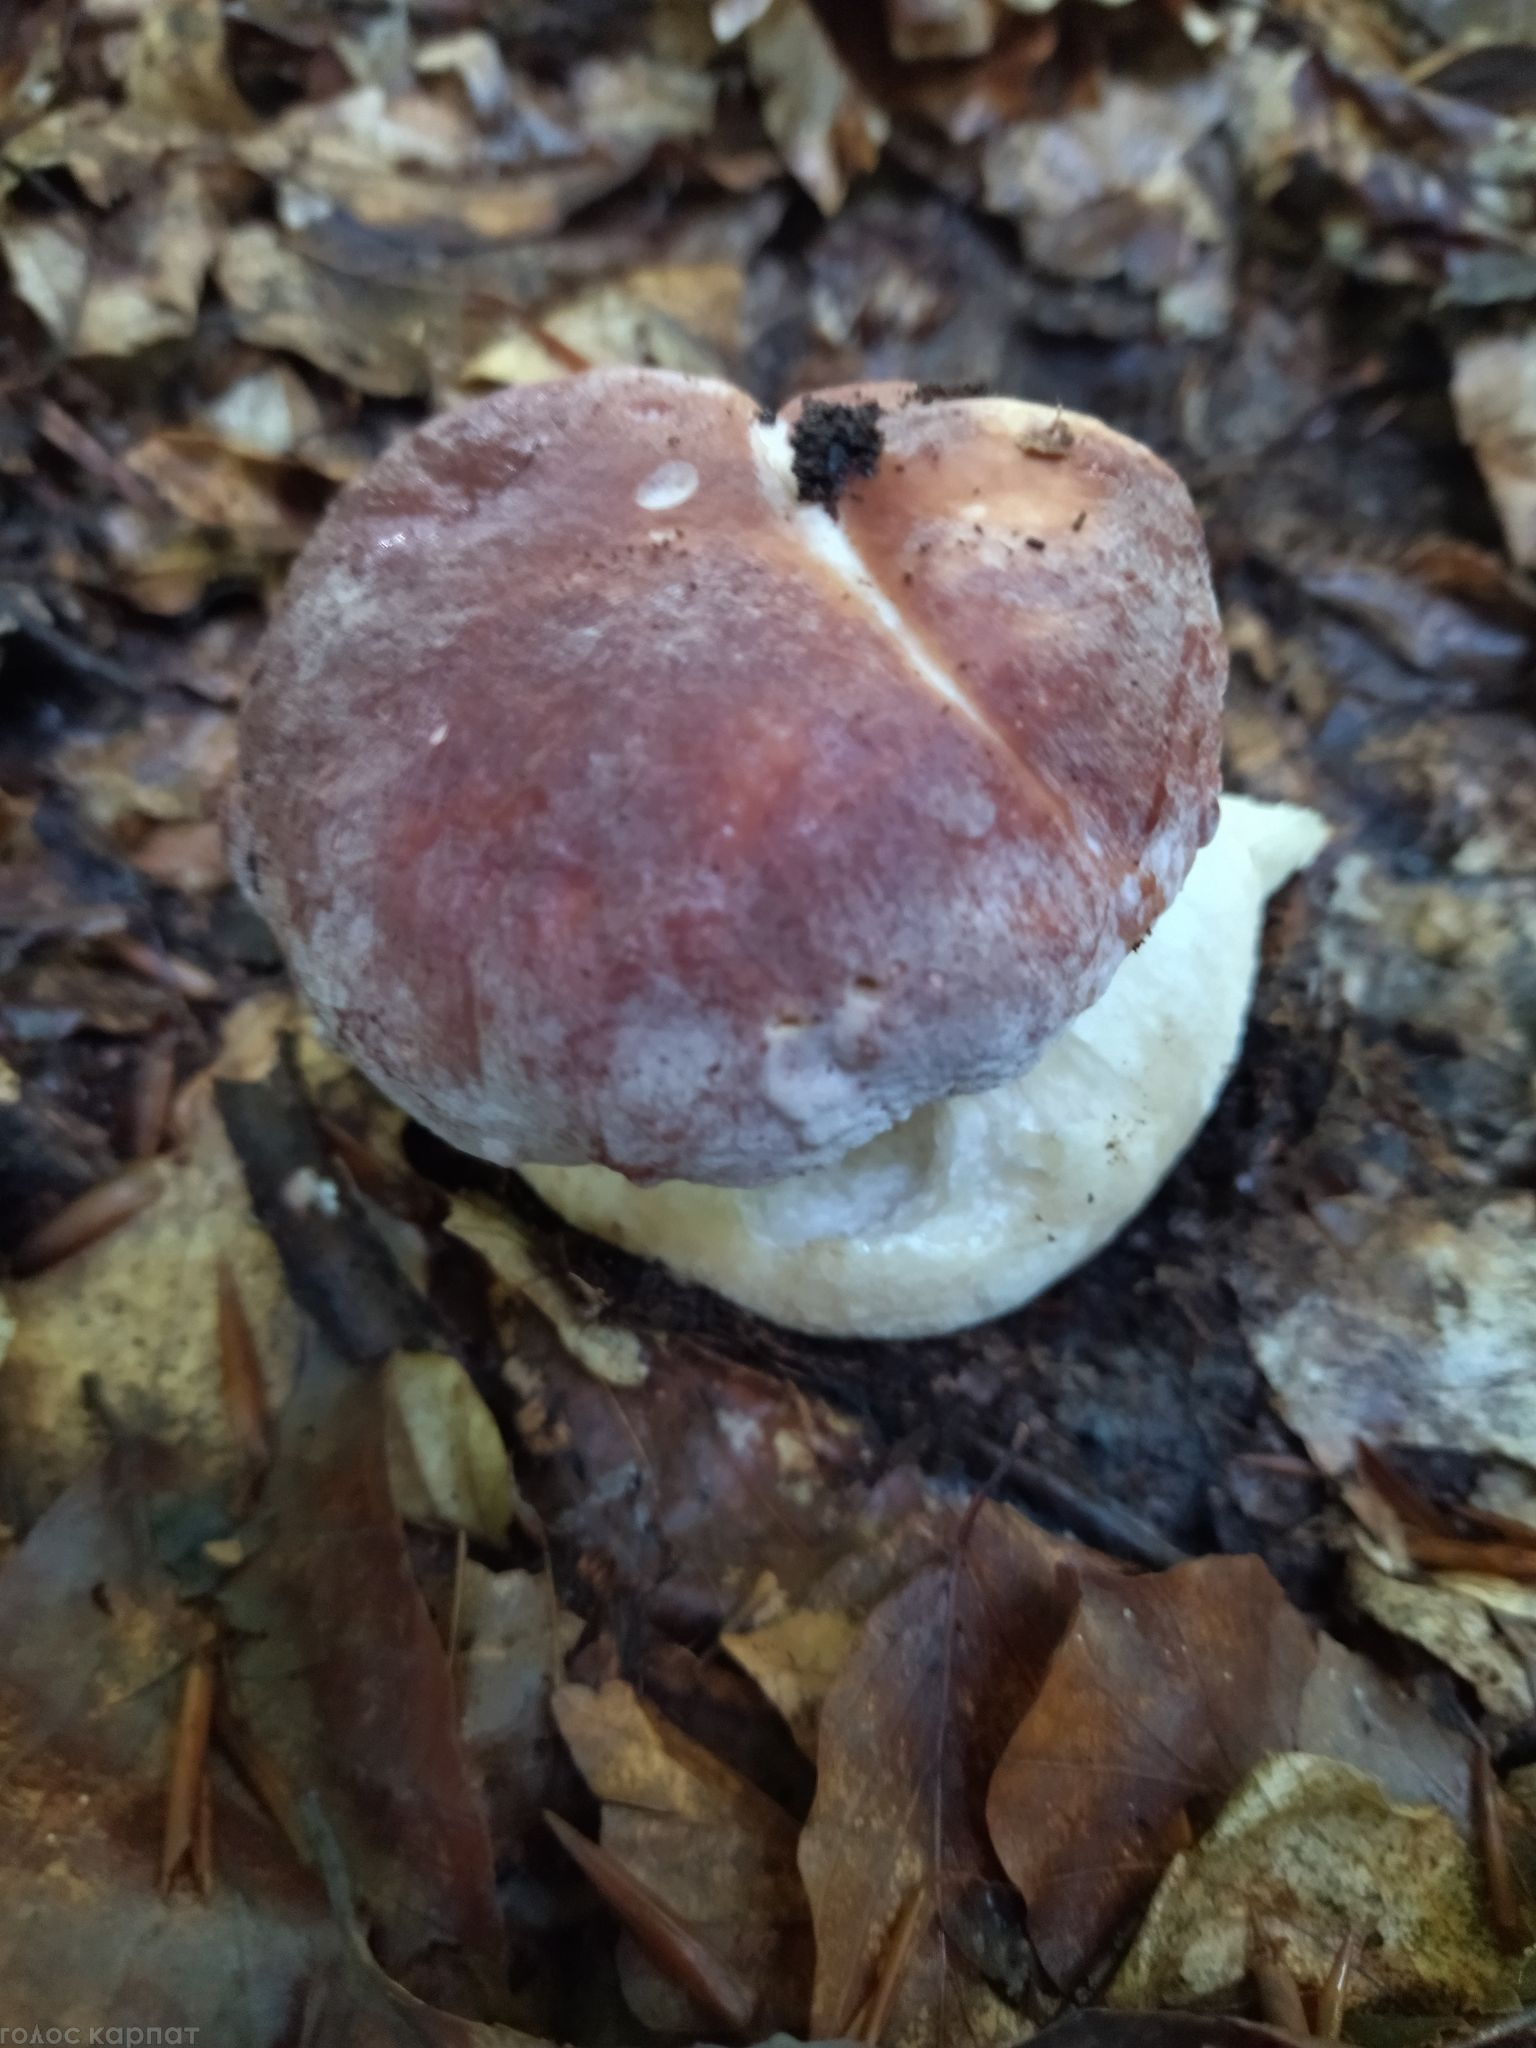 Осенние белые грибы в Закарпатье с черной шляпкой цвета и крепким толстым корнем называют кнушняками. 